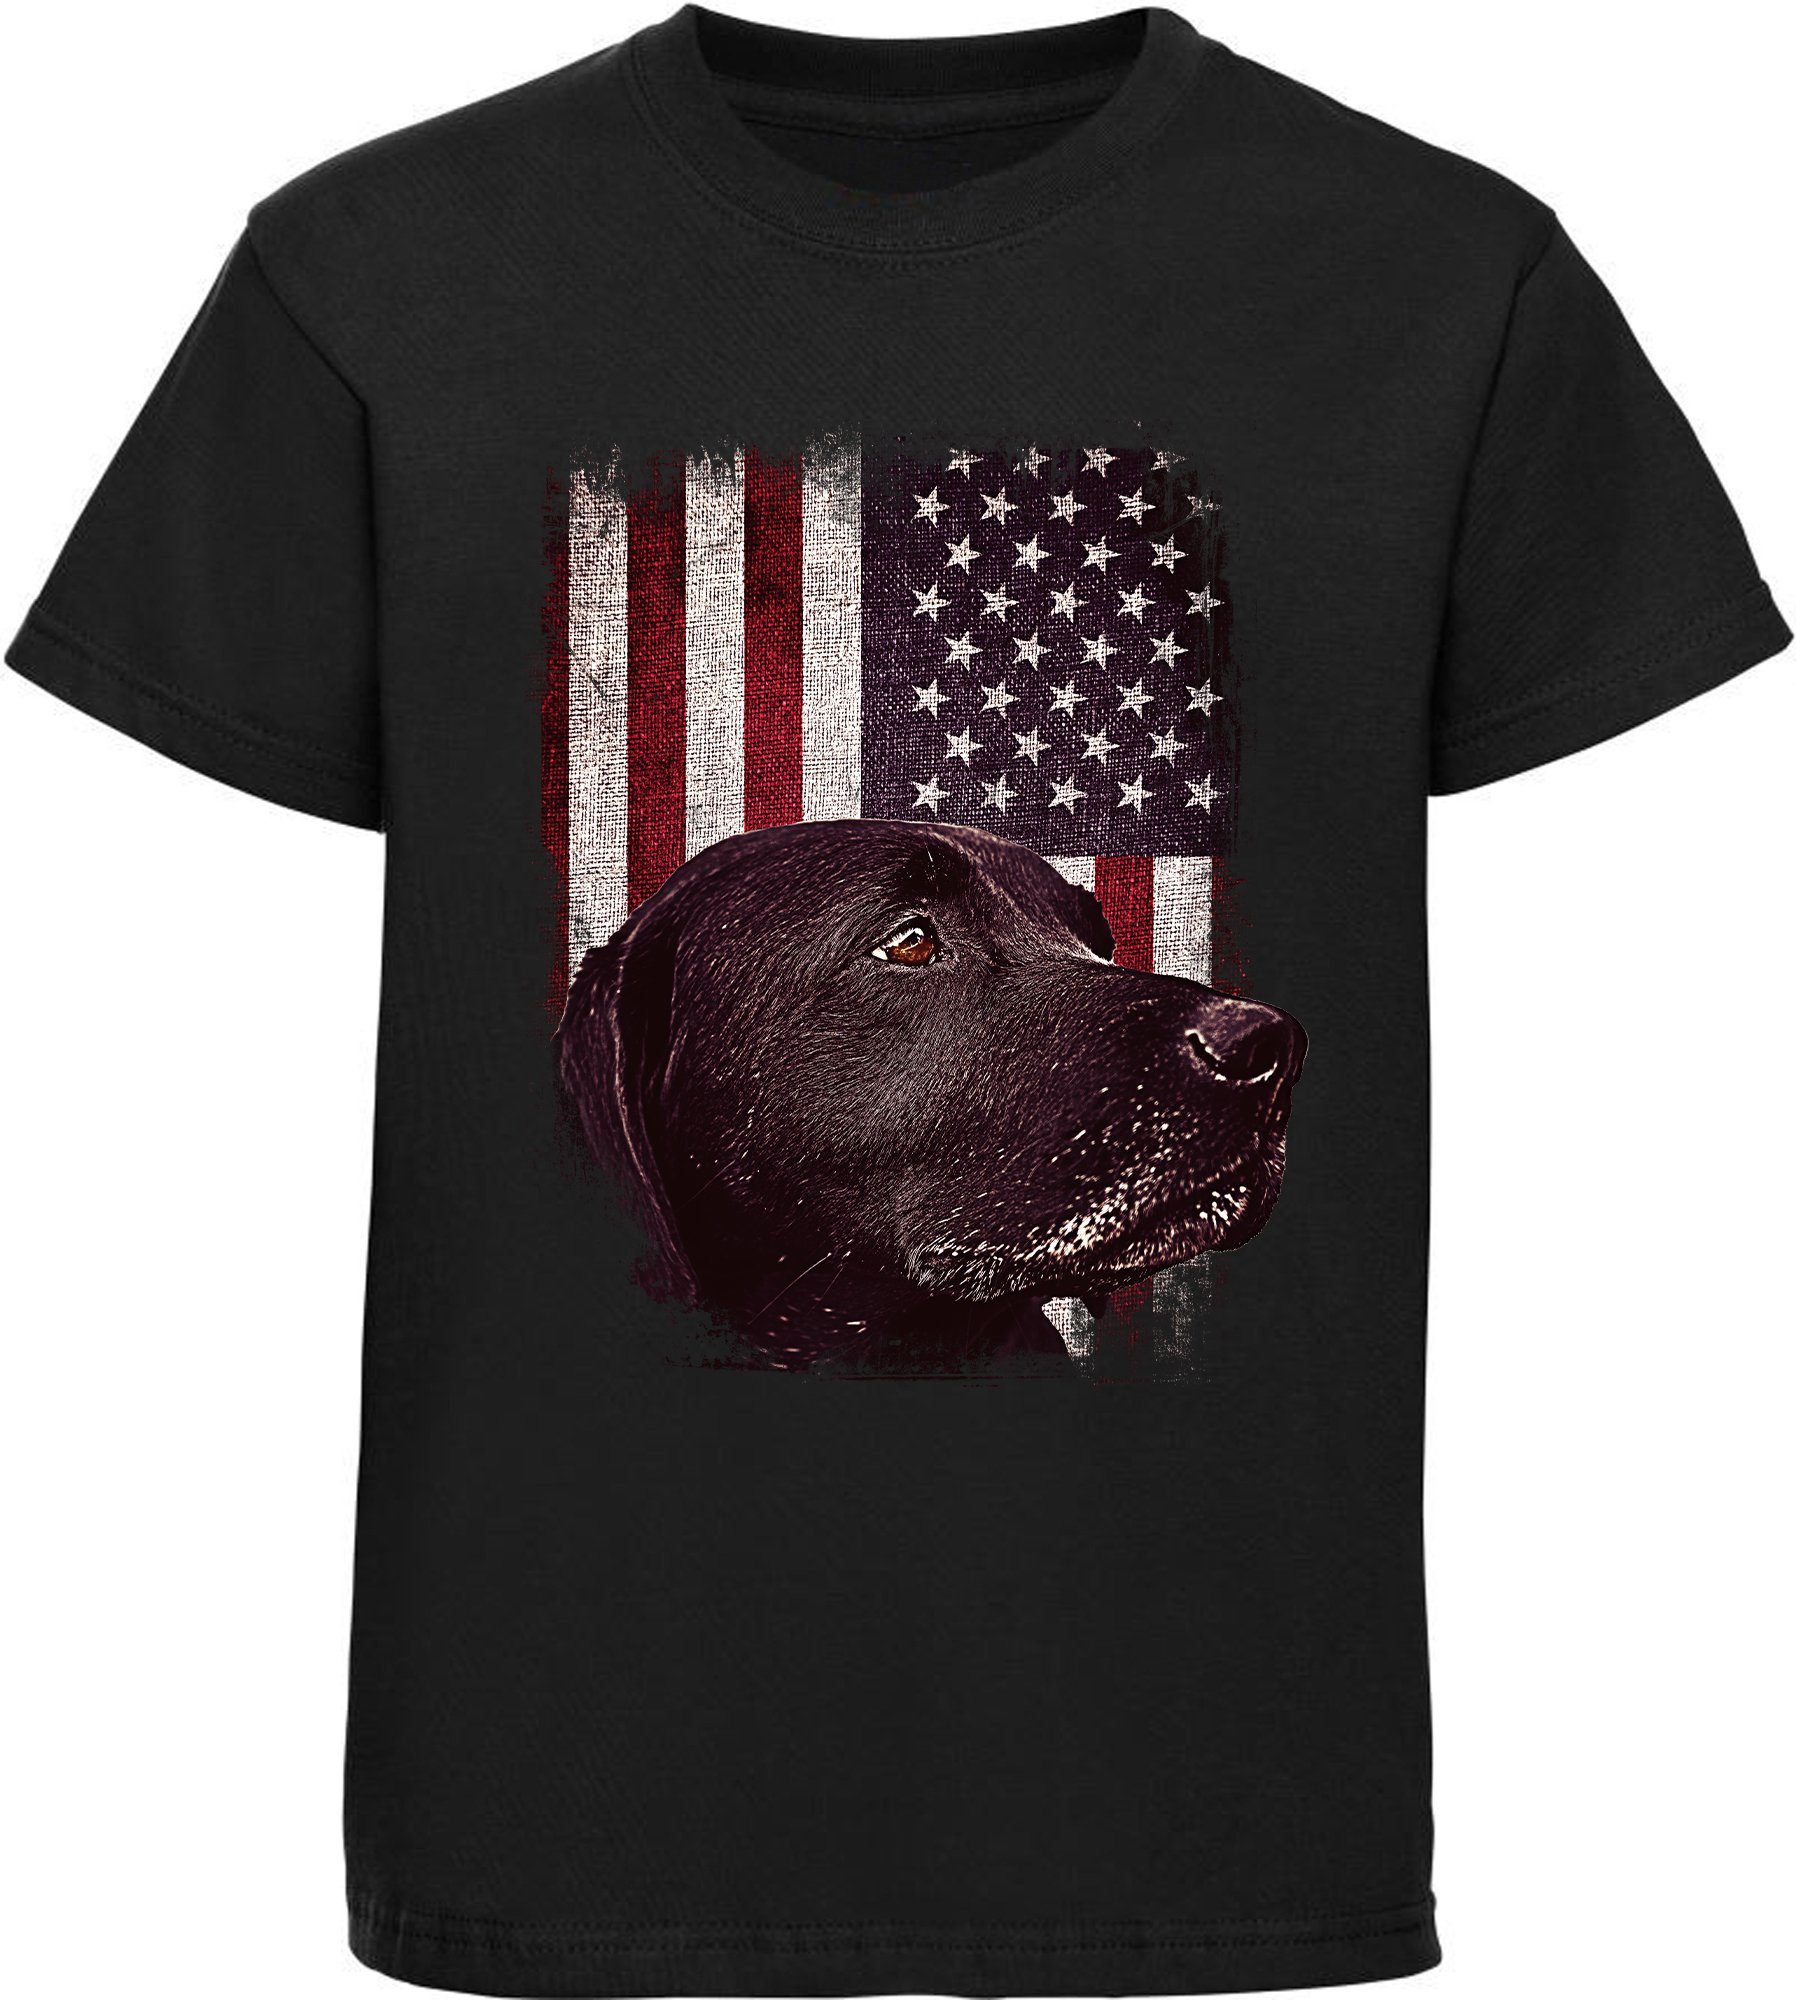 MyDesign24 T-Shirt Kinder Hunde Print Shirt bedruckt - schwarzer Labrador vor USA Flagge Baumwollshirt mit Aufdruck, i246